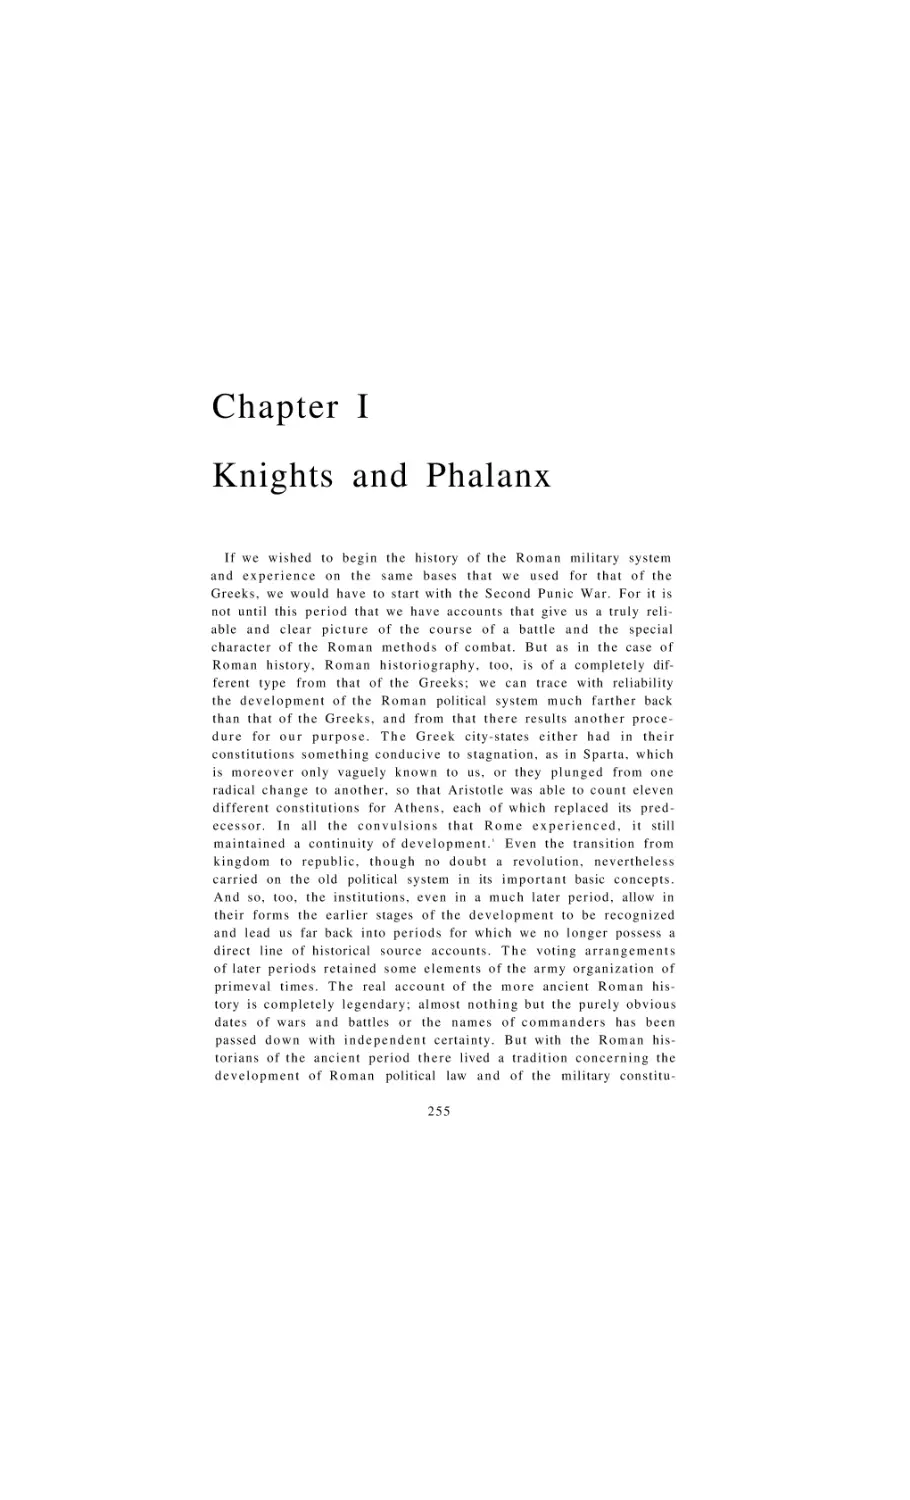 Knights and Phalanx